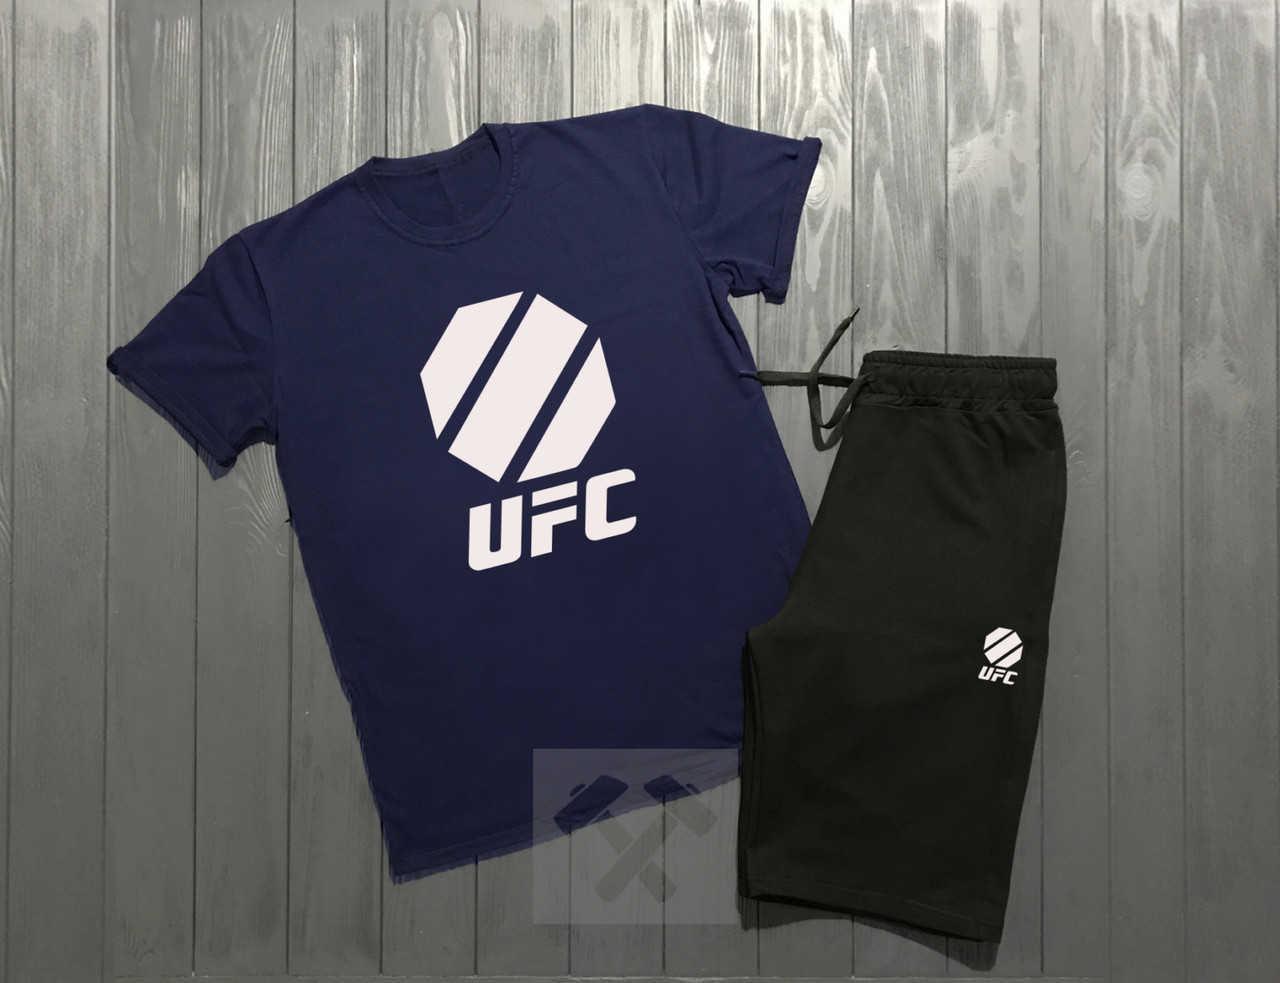 Чоловічий комплект футболка + шорти UFC синього і чорного кольору (люкс) S